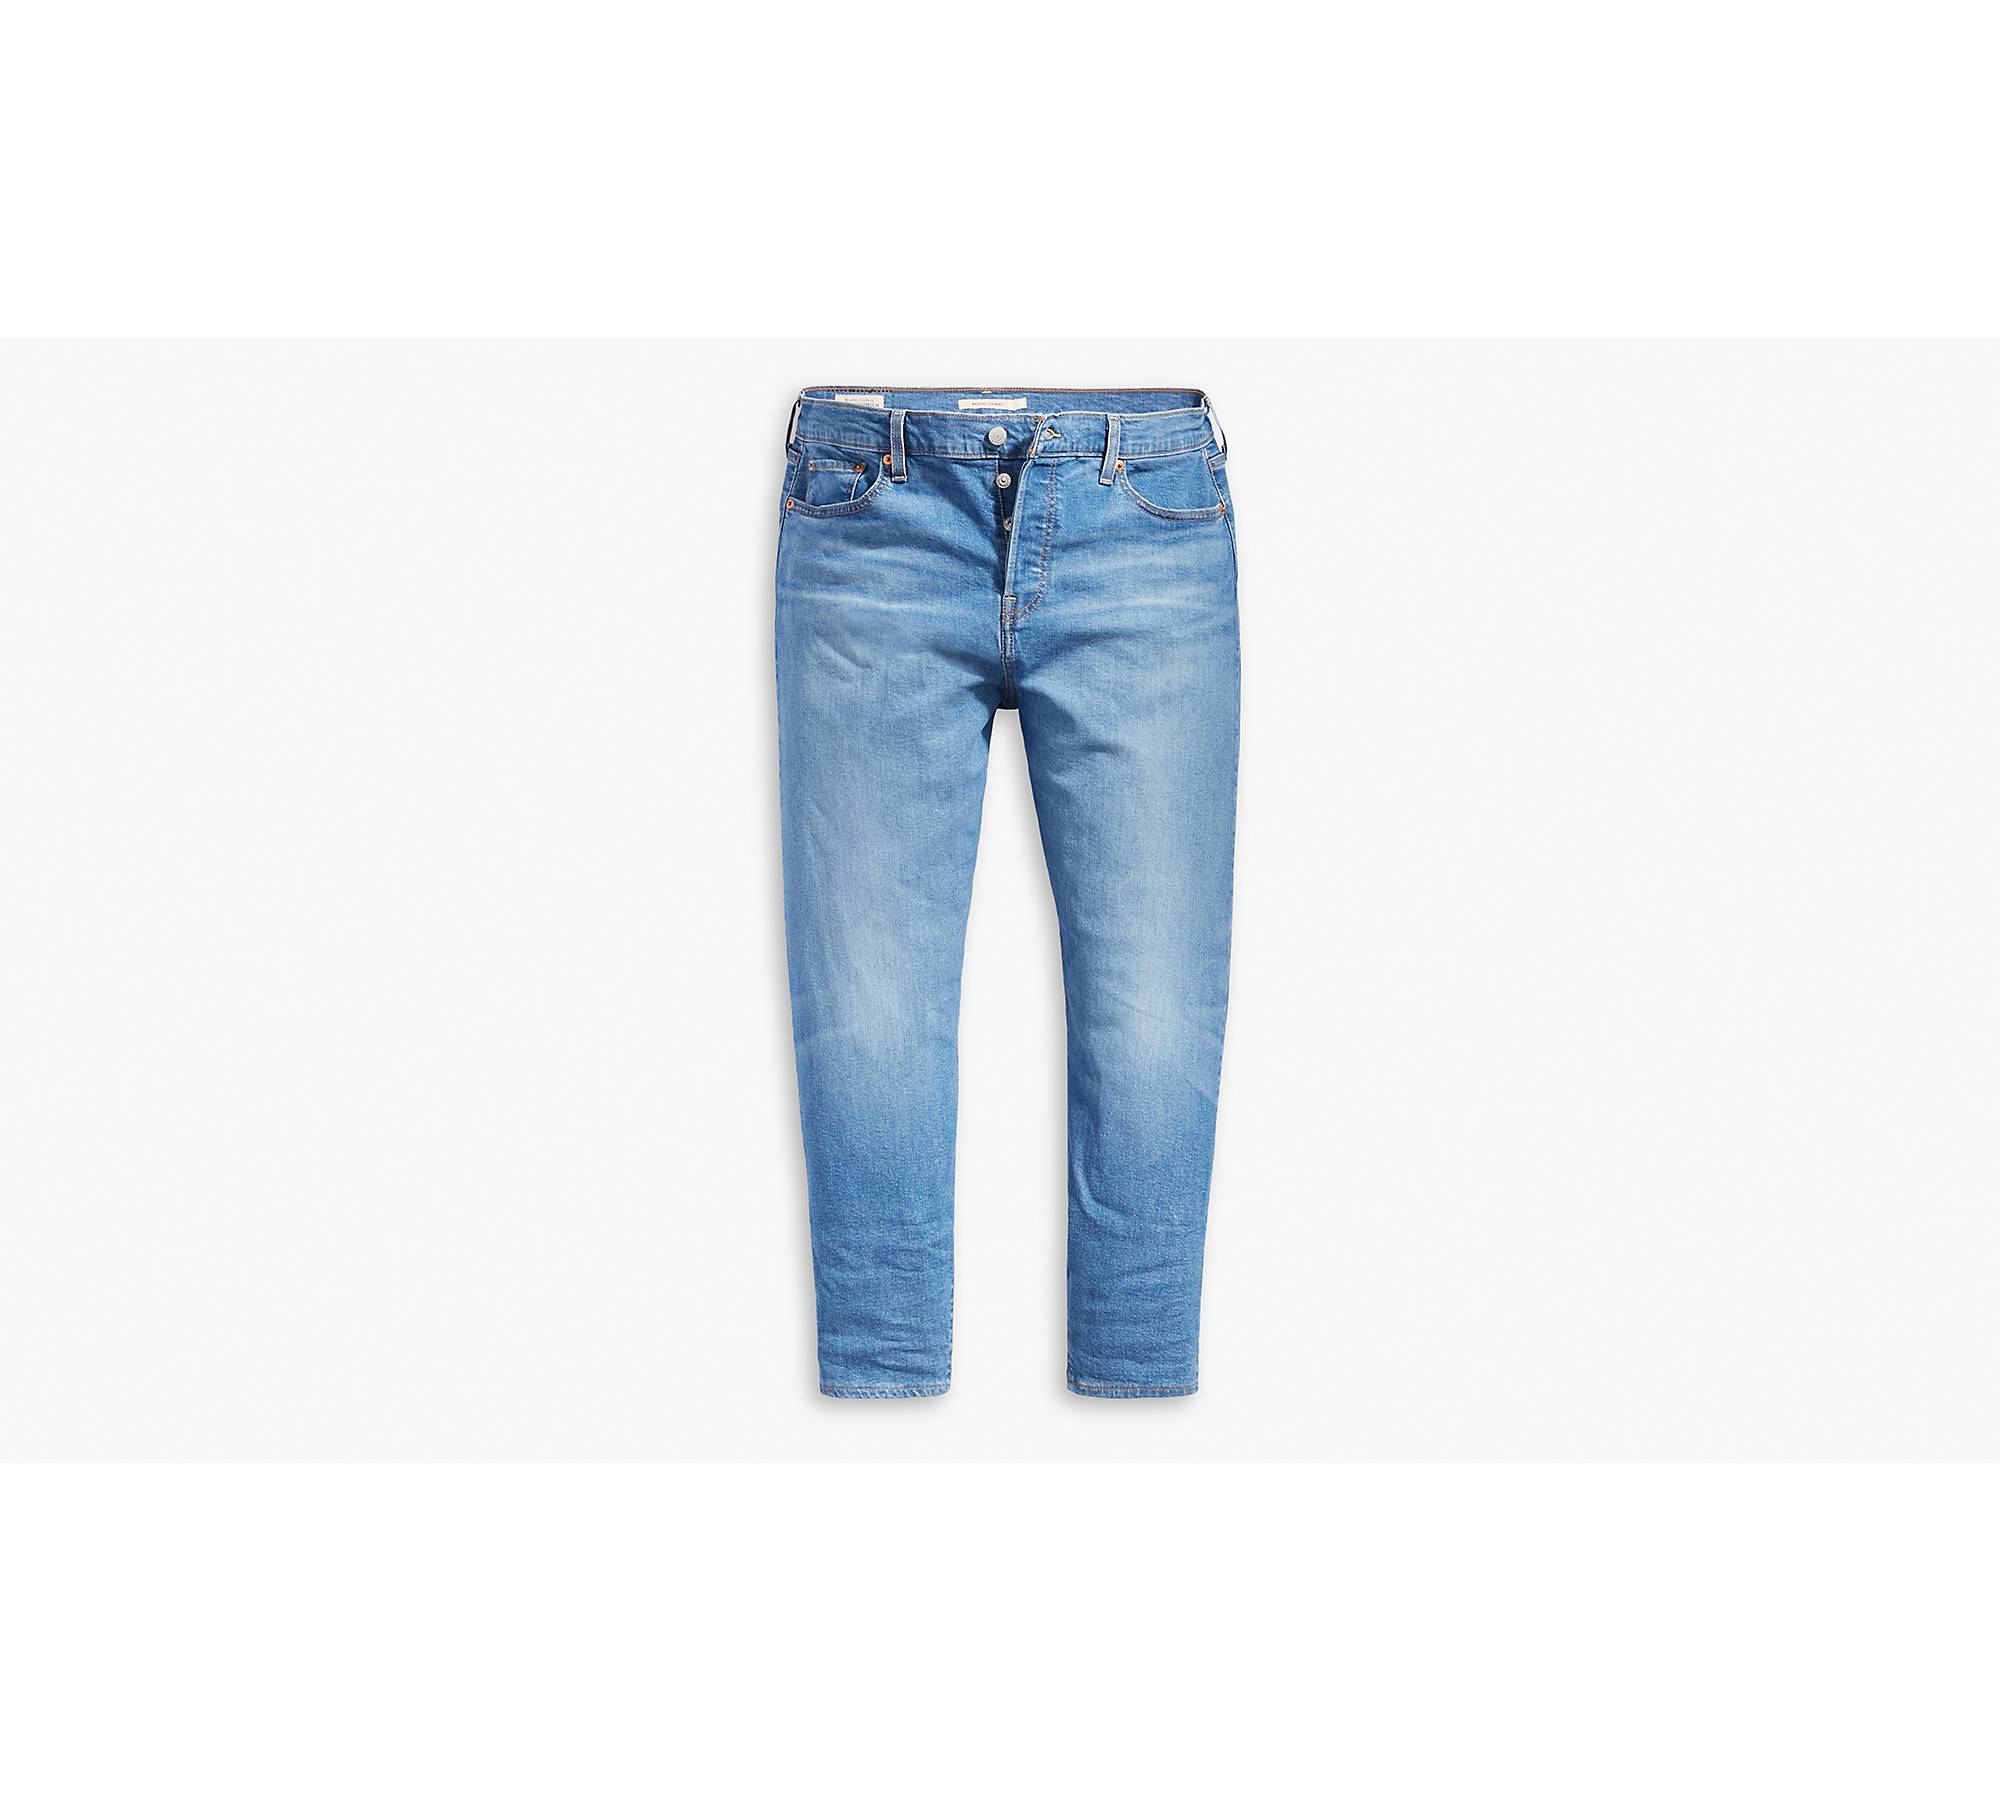 Blue Wonderfit Slim Leg Jeans, Women